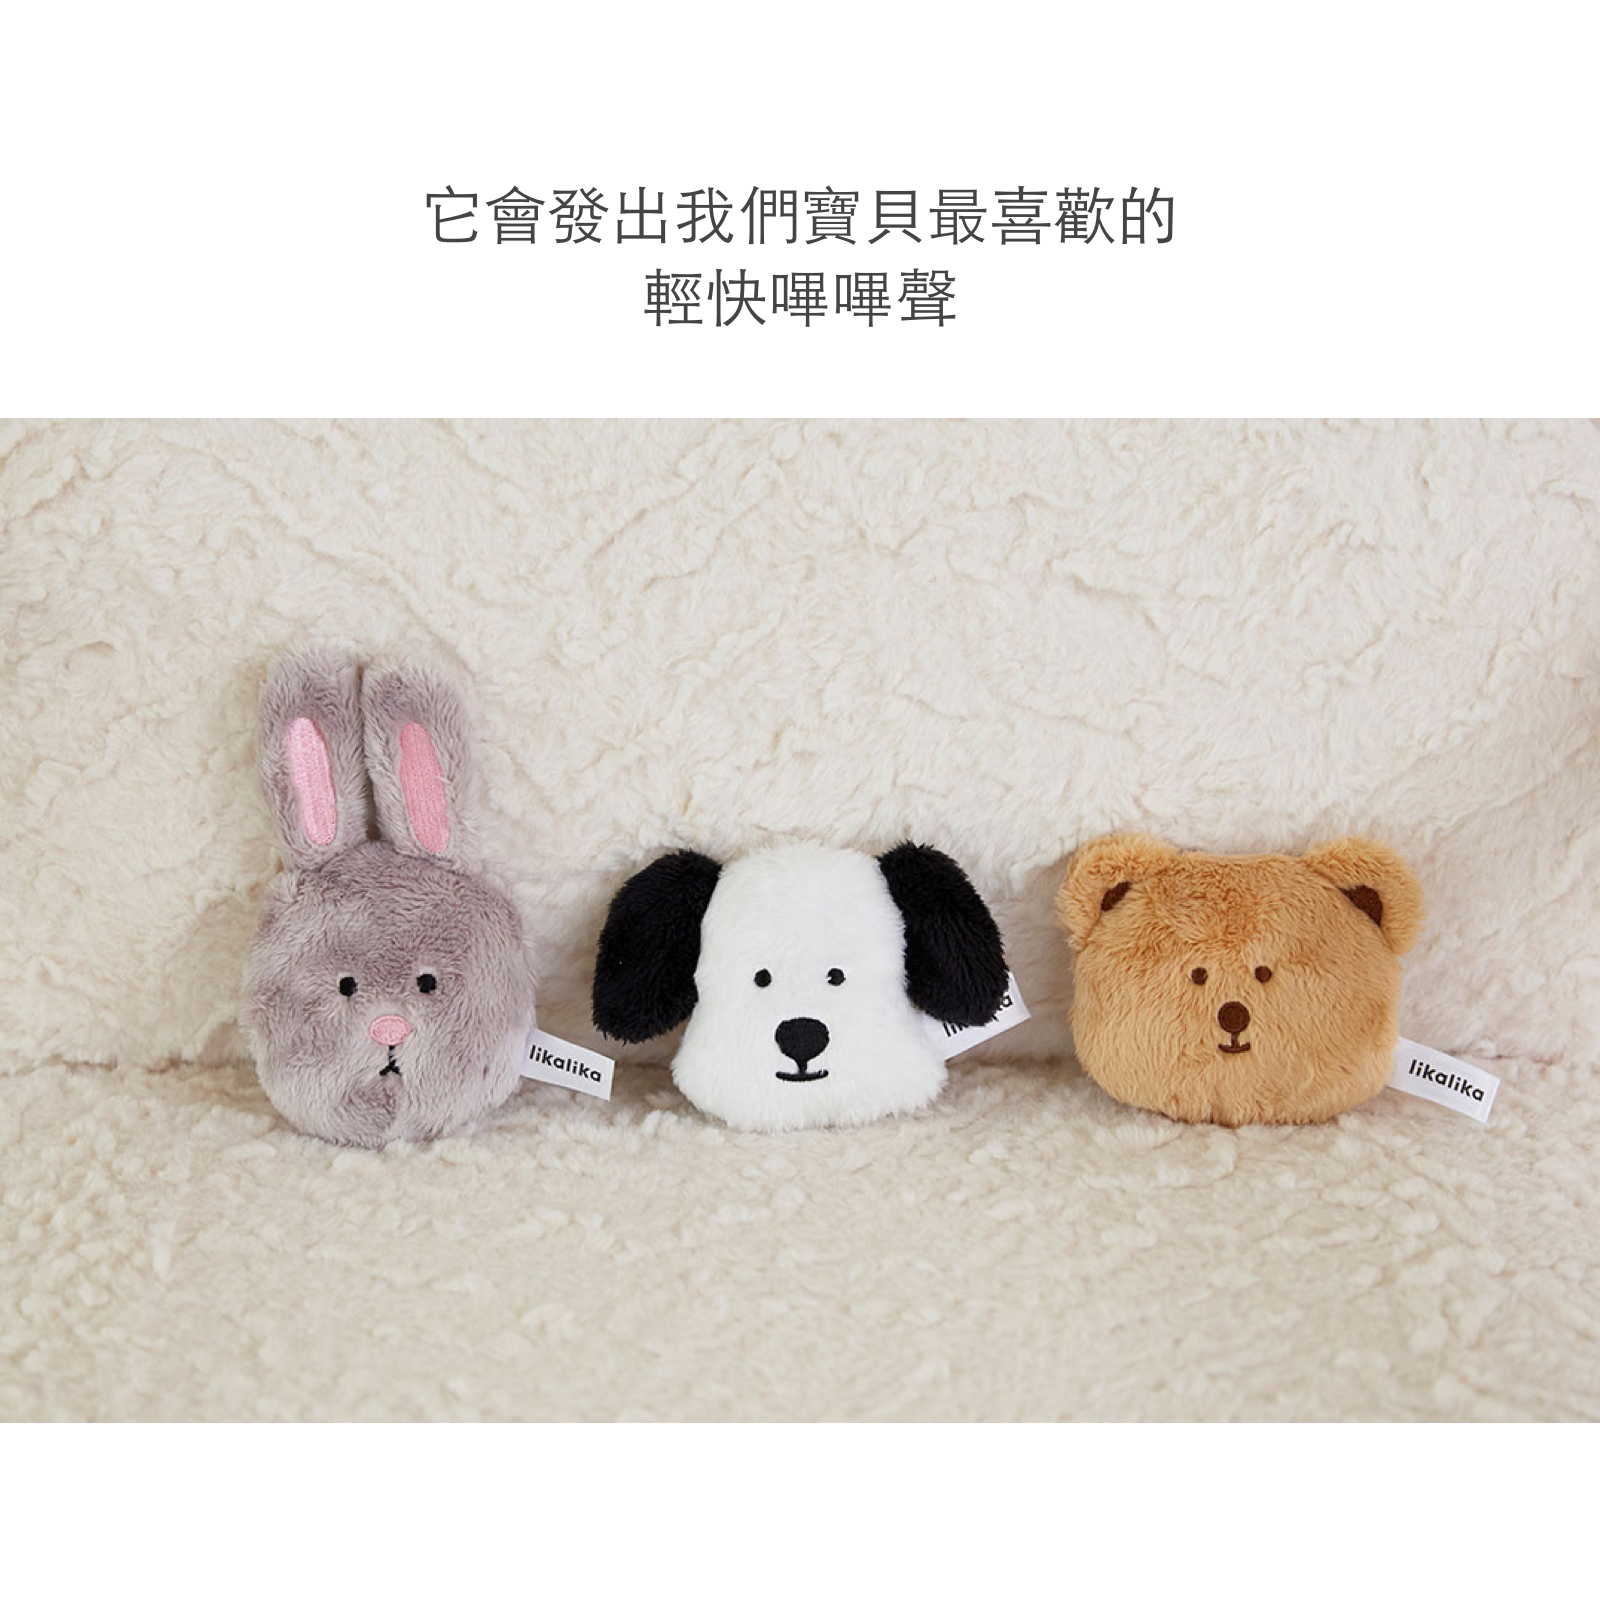 韓國 likalika 小夥伴系列貓狗玩具